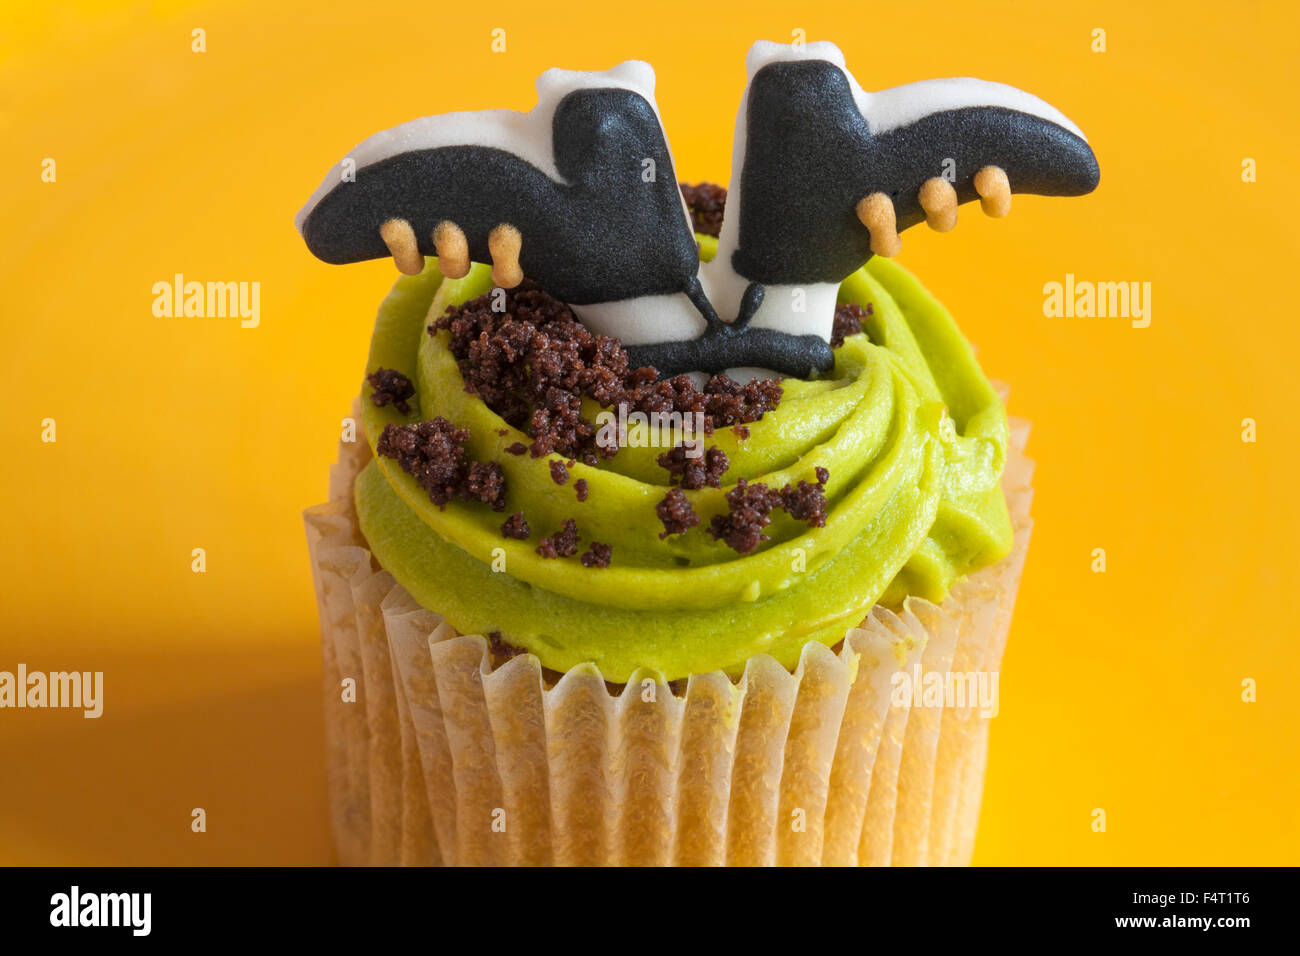 M&S Toffee Apple cupcake con pies de las brujas de Halloween en placa amarilla Foto de stock